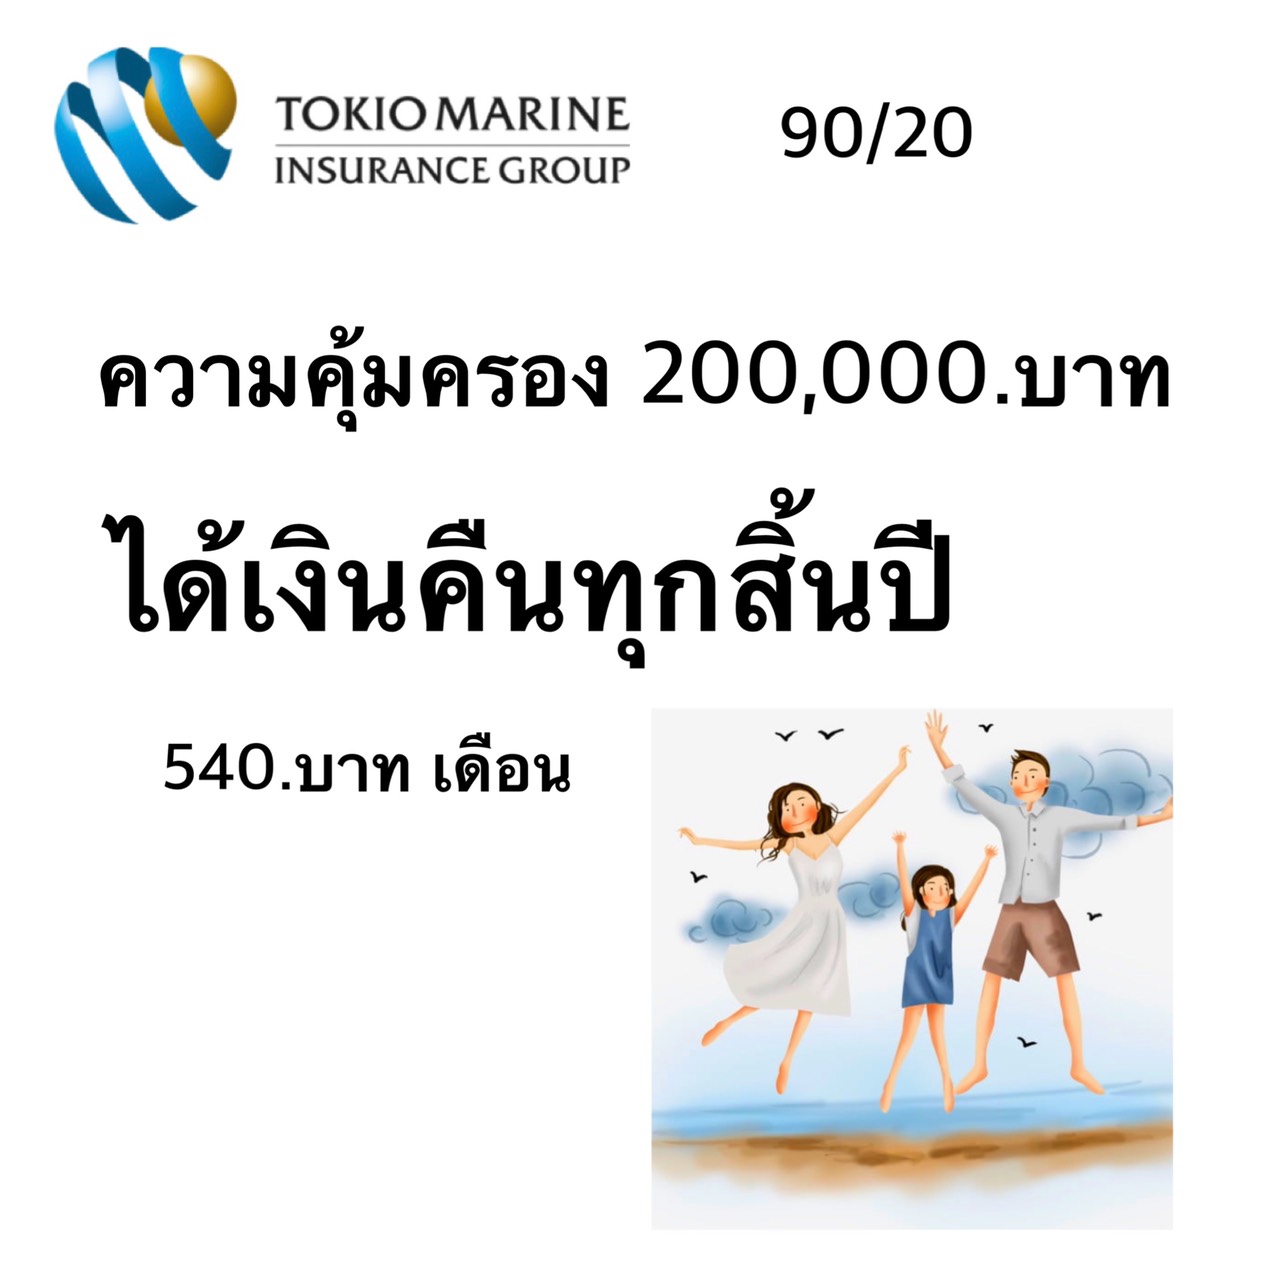 โตเกียวมารีน Thailand | บริษัทประกันภัย  90/20 คุ้มครองตลอดชีพ เพิ่มต้น 540.บาท  เราทุกคนไม่ได้หนุ่มขึ้น หรือสาวขึ้น